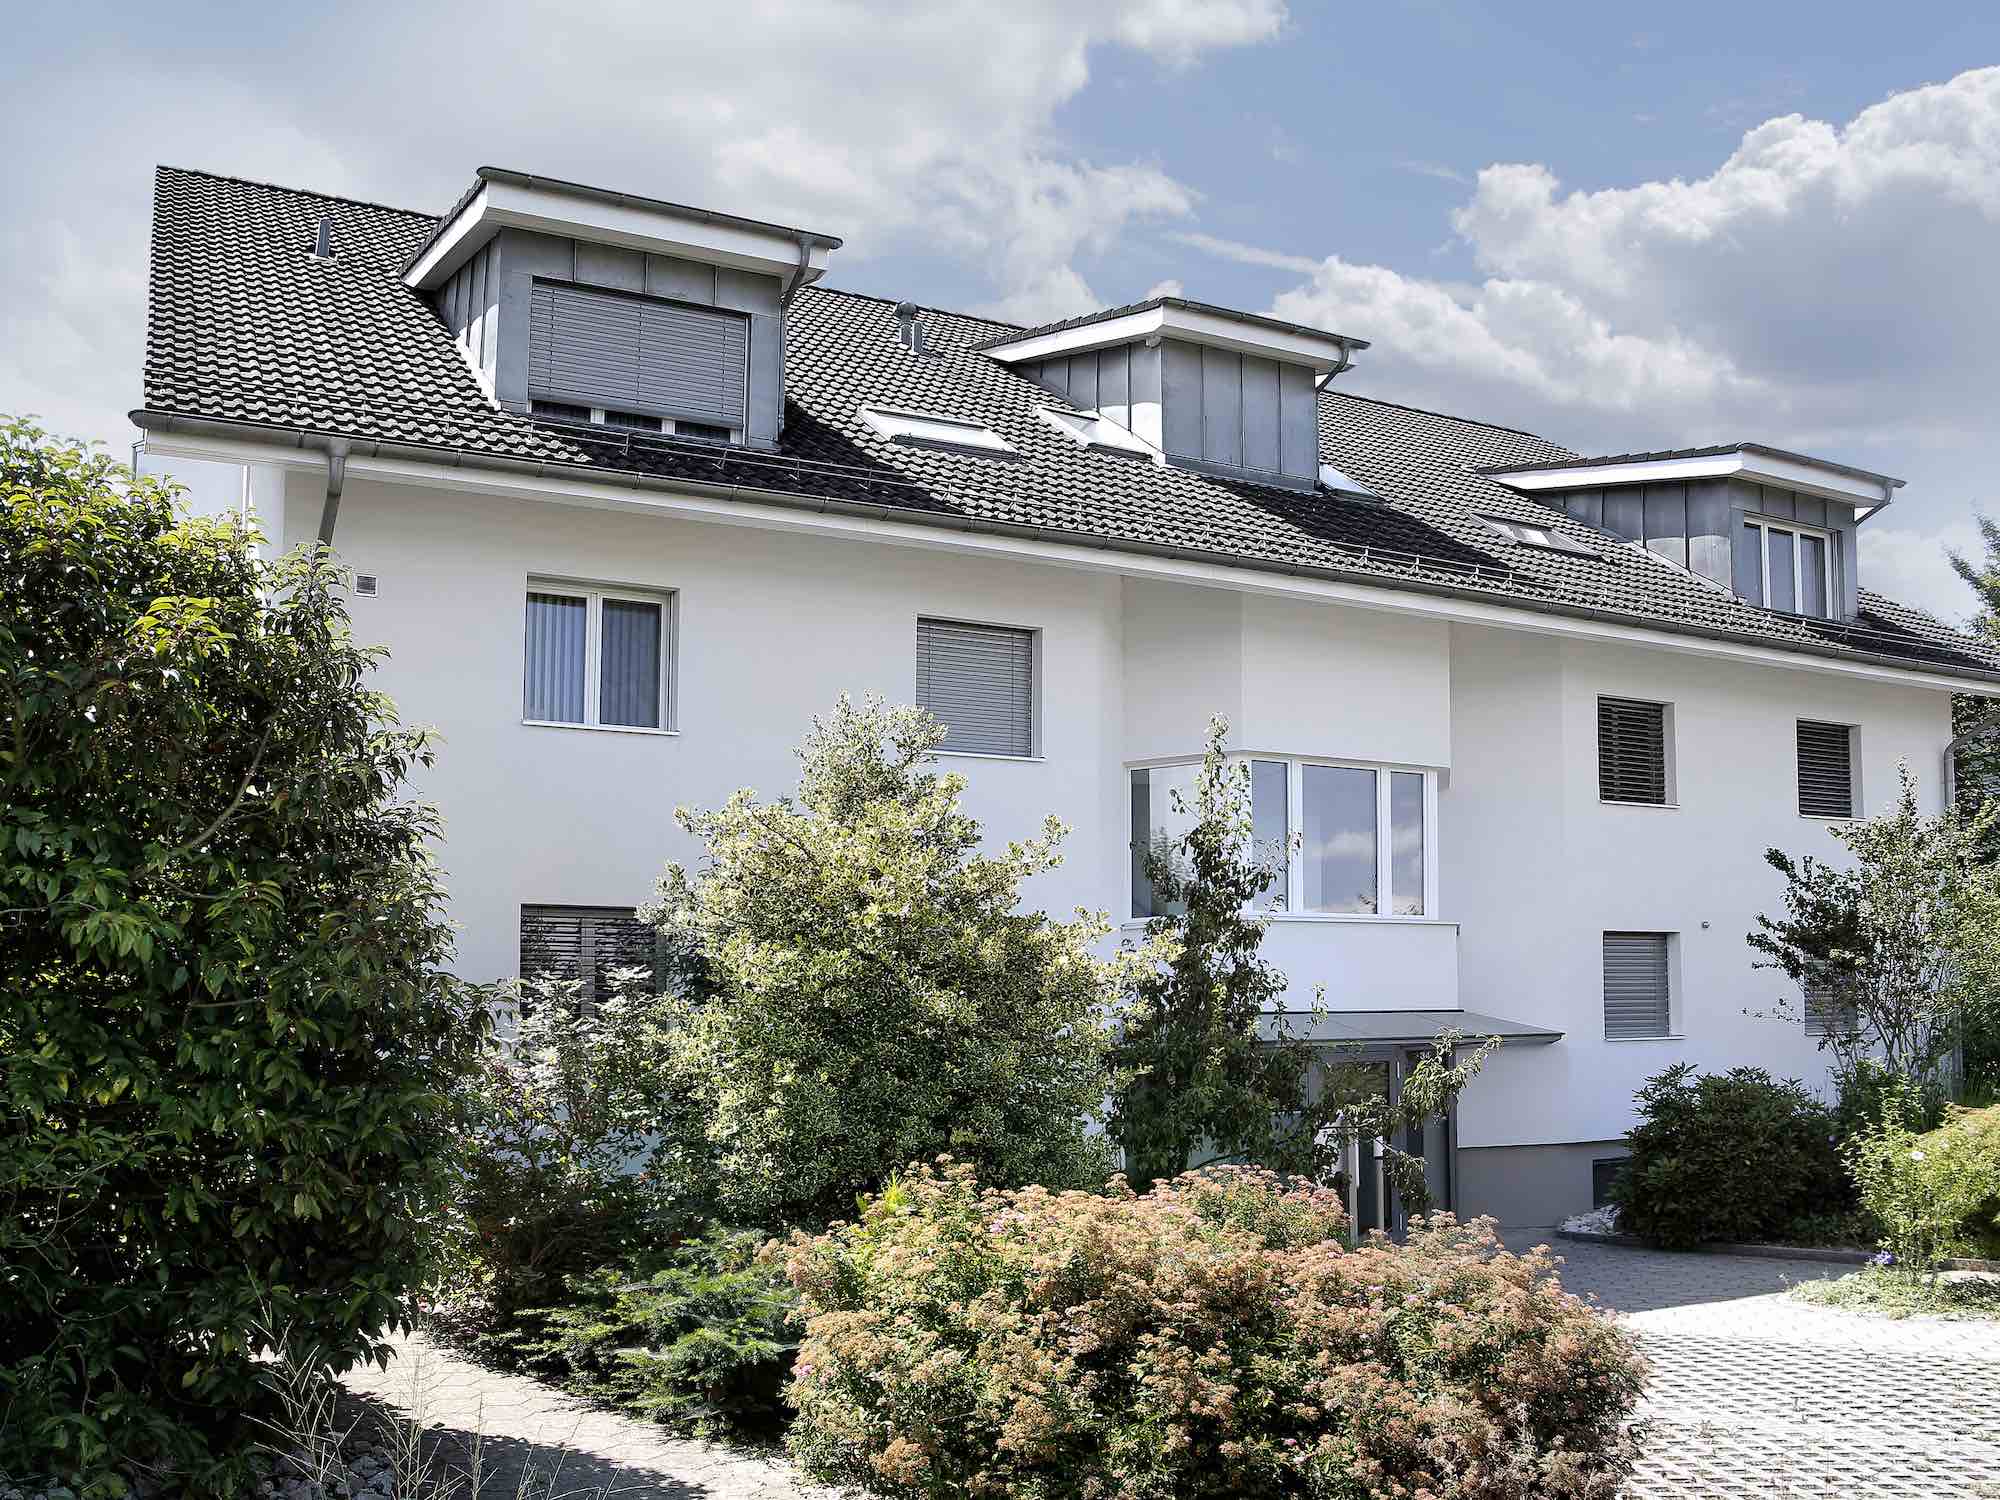 Fassadenisolation durch die Viktor Wyss AG in Flumenthal, Solothurn